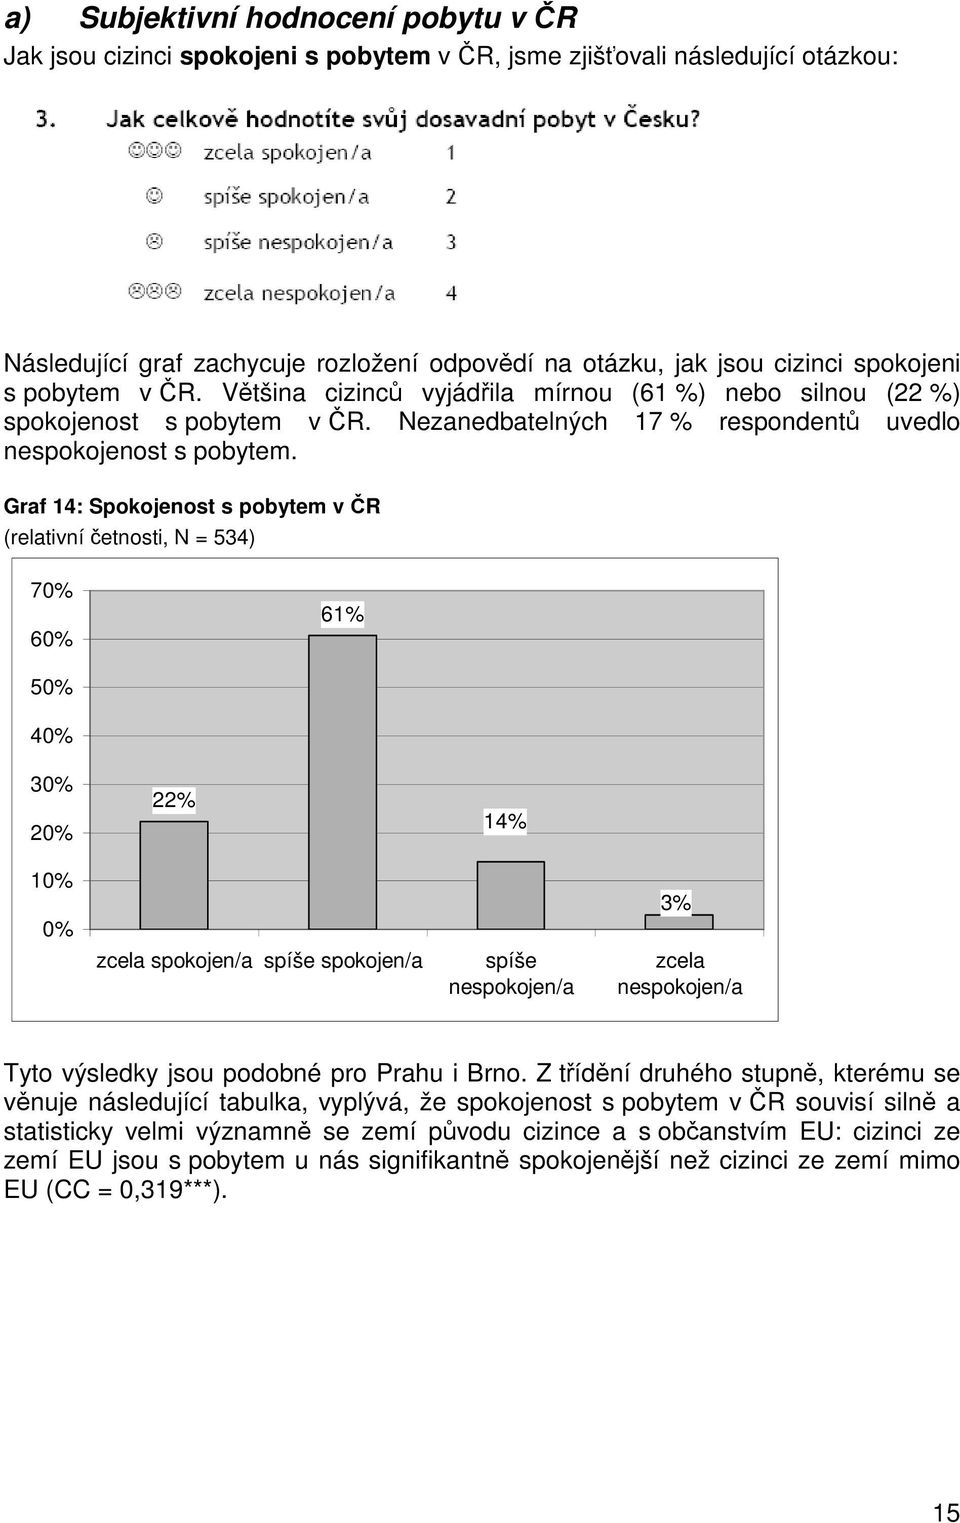 Graf 14: Spokojenost s pobytem v ČR (relativní četnosti, N = 534) 70% 60% 61% 50% 40% 30% 20% 10% 0% 22% zcela spokojen/a spíše spokojen/a 14% spíše nespokojen/a 3% zcela nespokojen/a Tyto výsledky